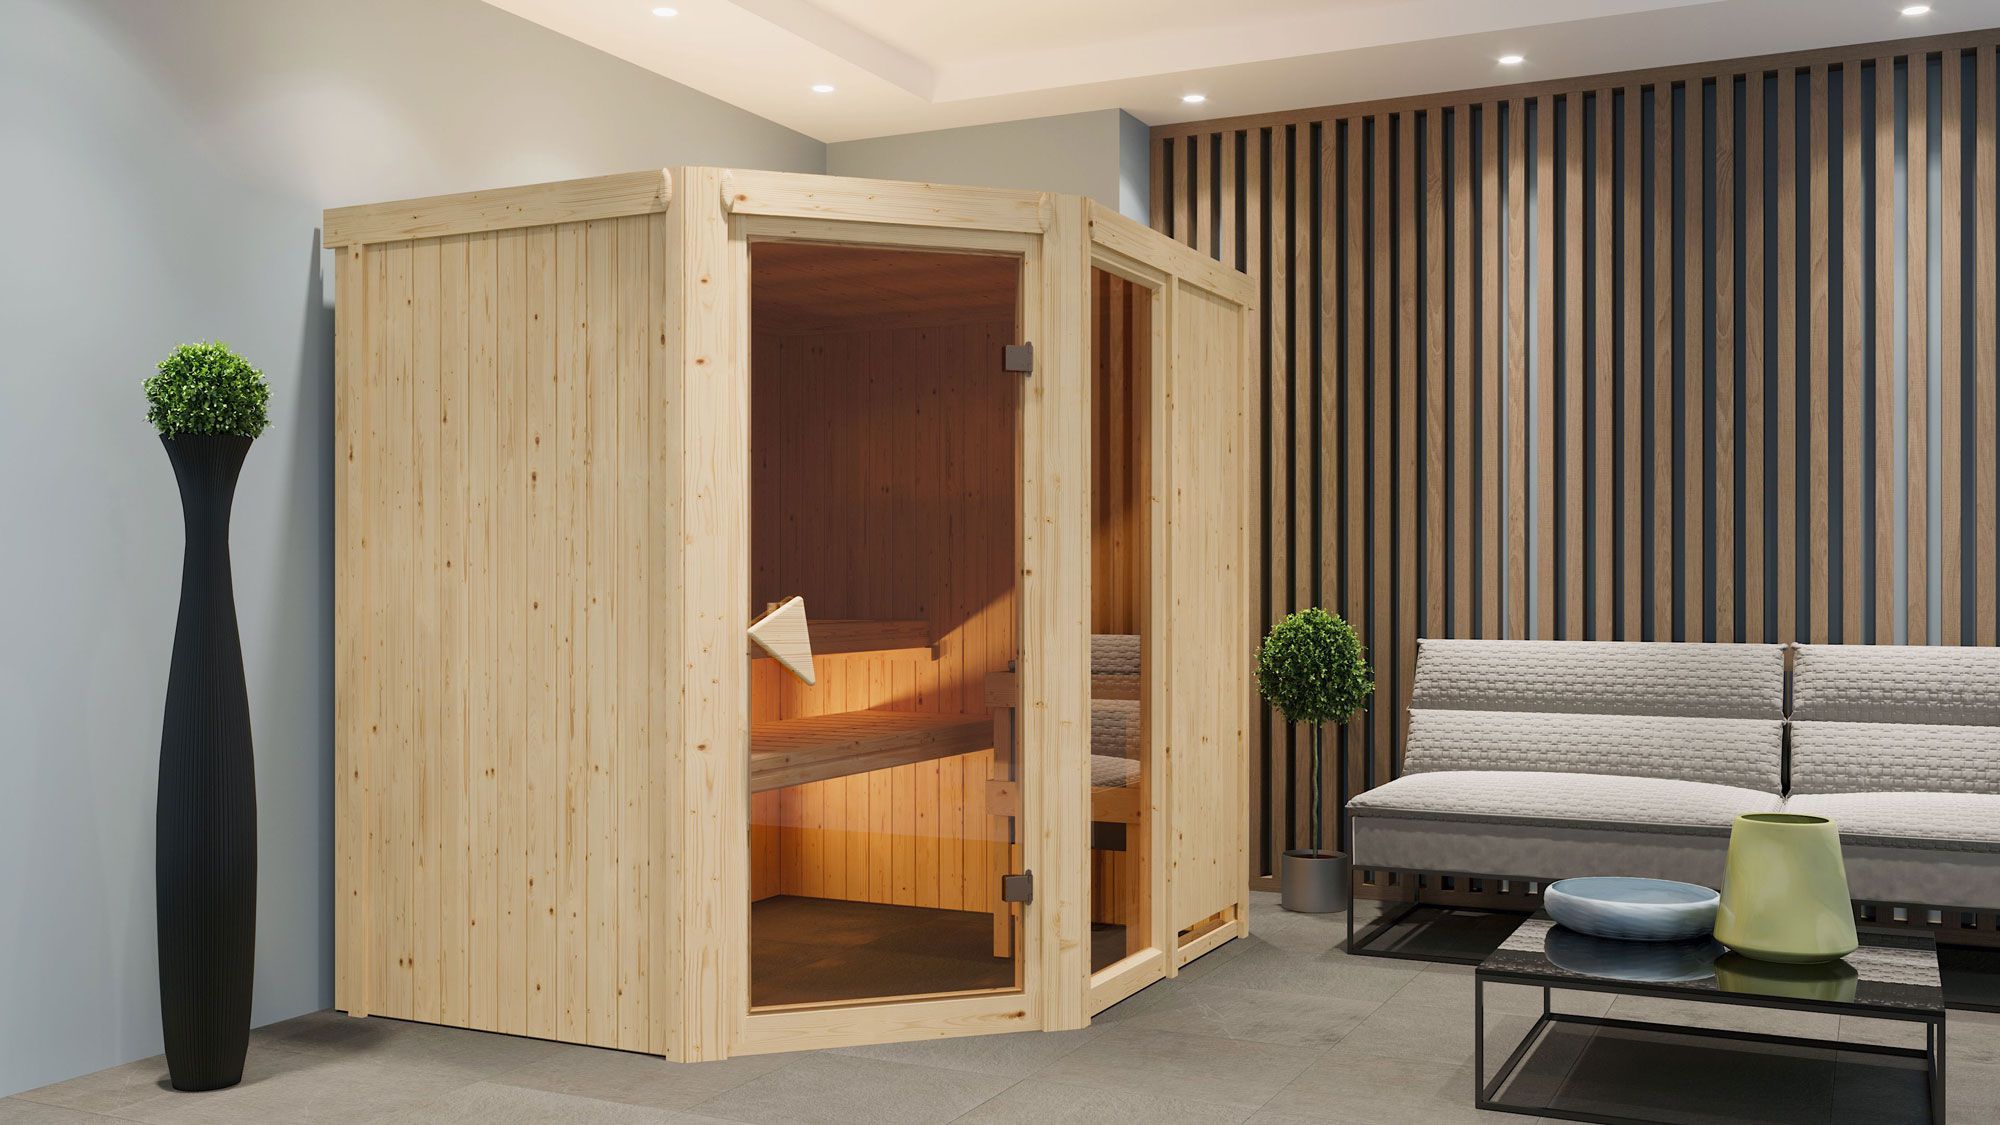 Sauna "Bjarki 2" SET met bronskleurige deur & kachel externe regeling eenvoudig 9 kW roestvrij staal - 196 x 170 x 198 cm (B x D x H)